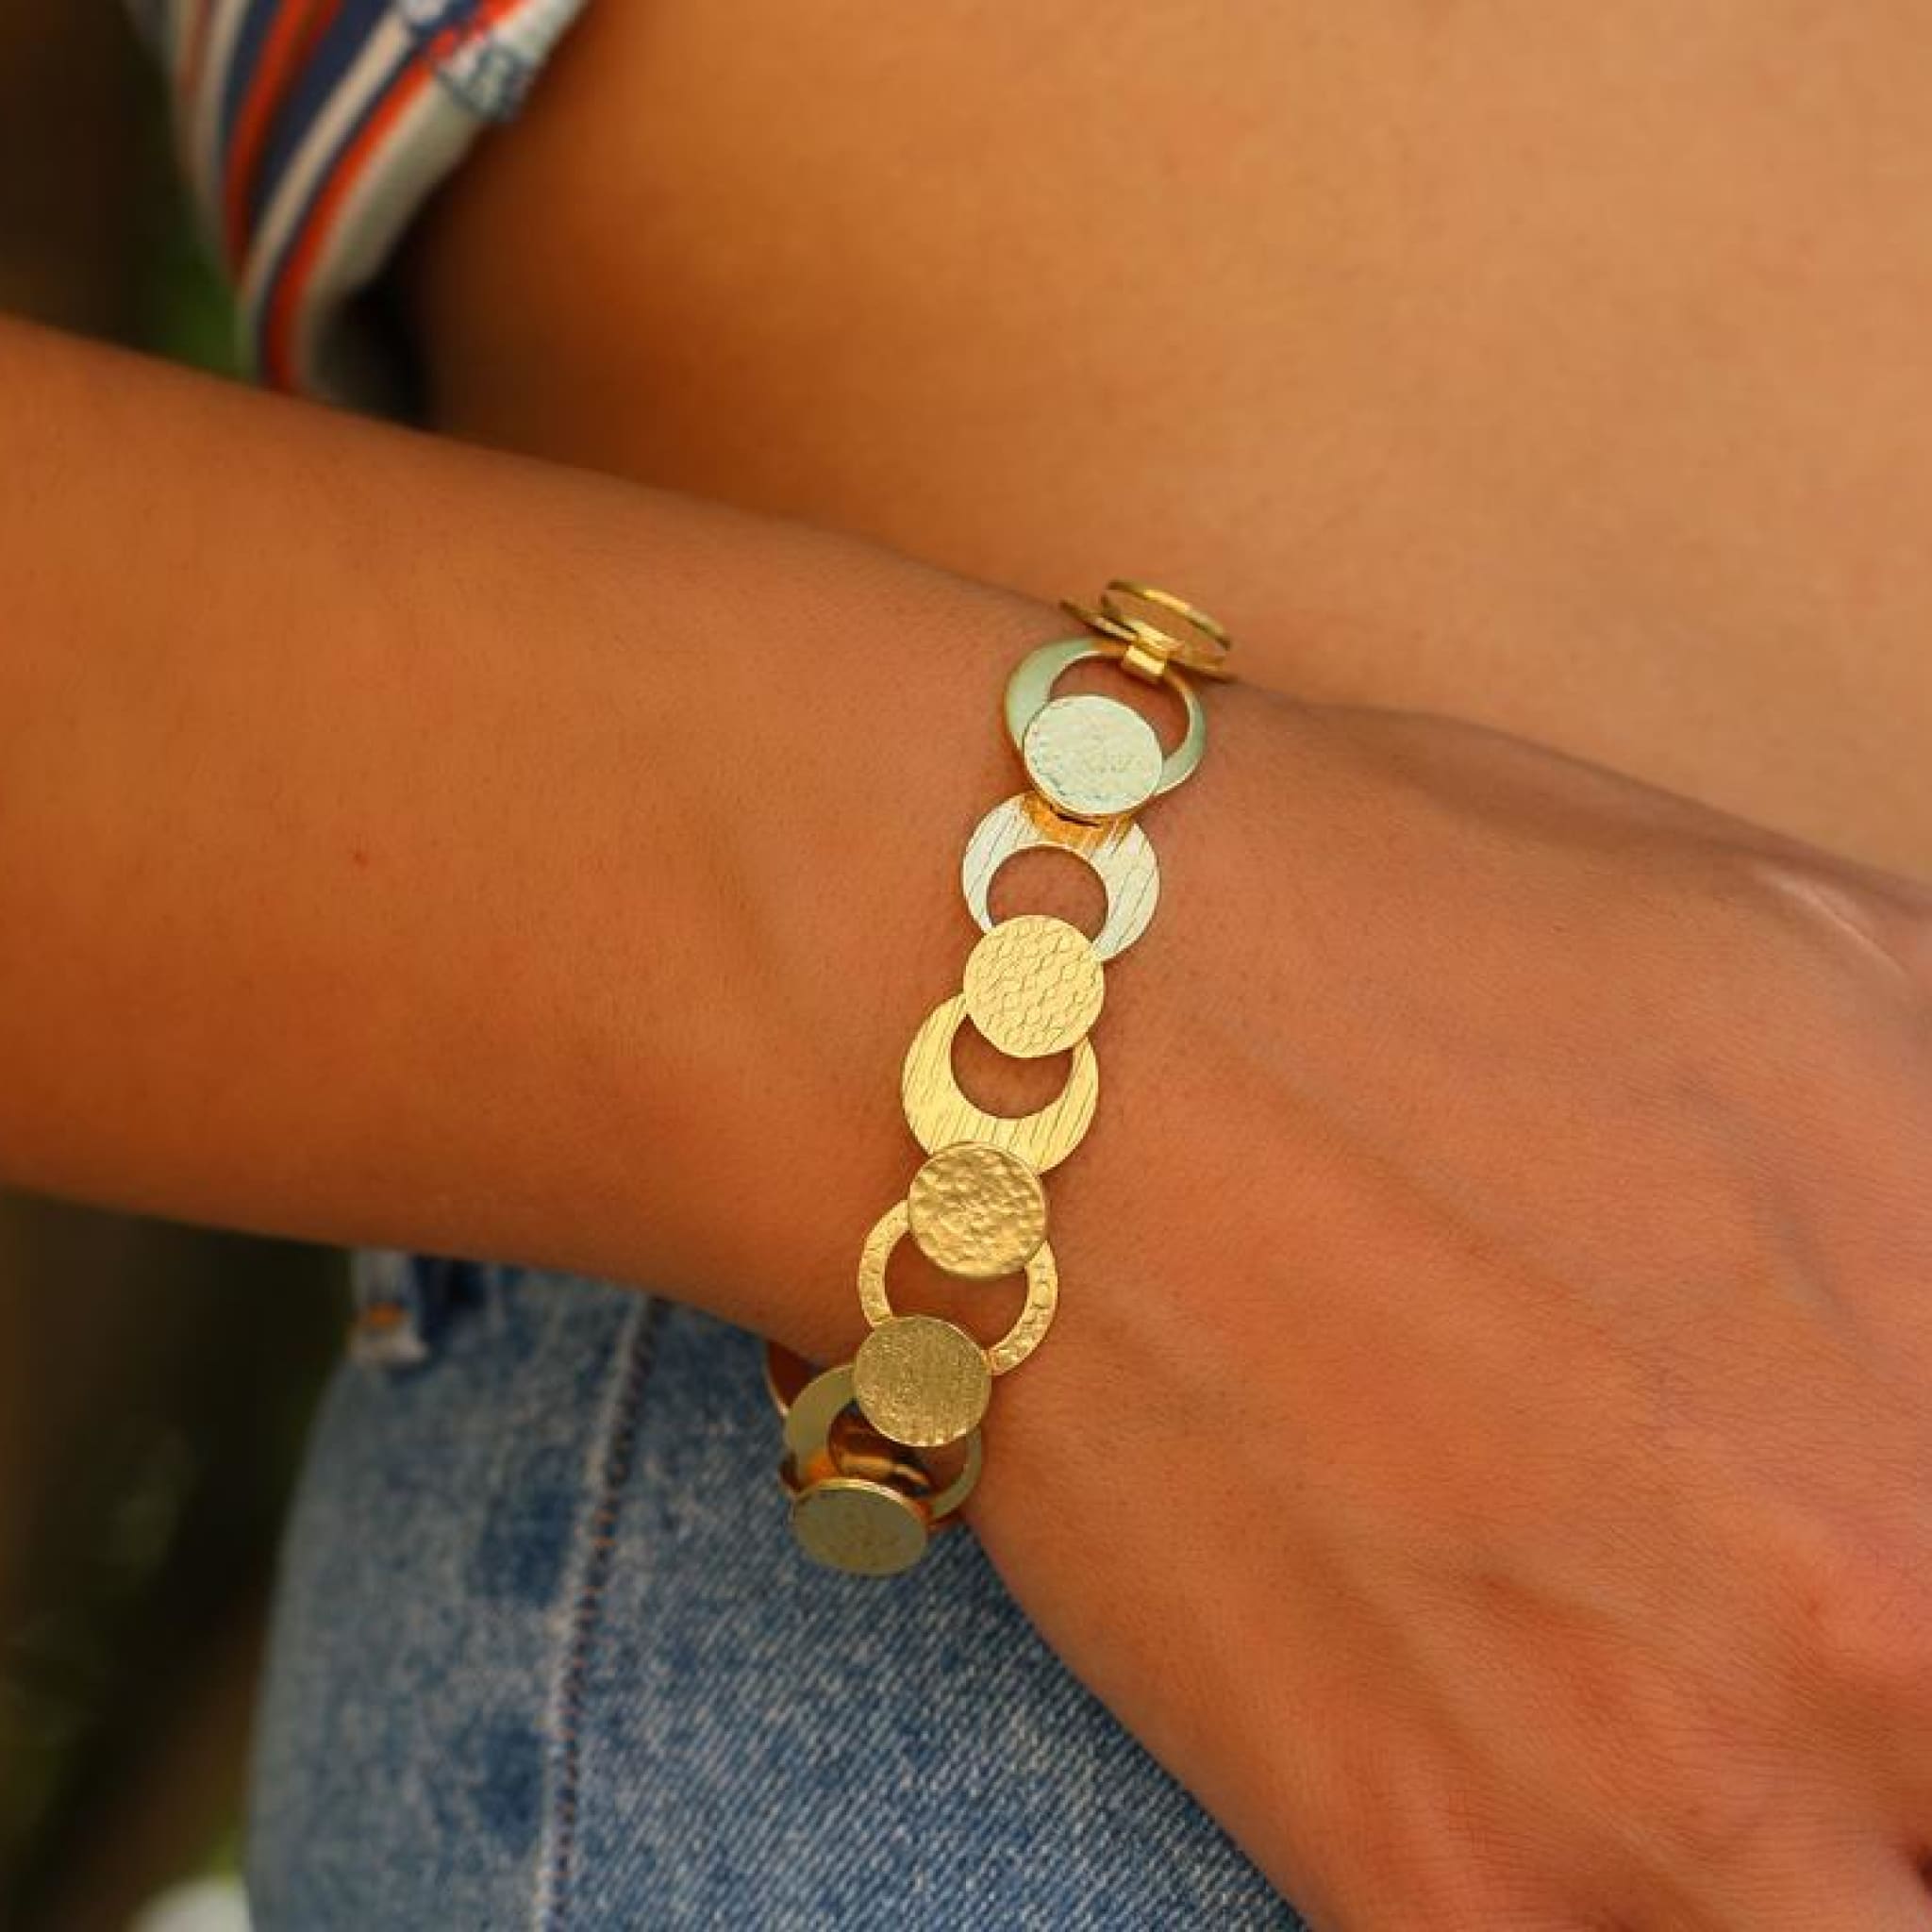 Women's 14k Gold Bracelets